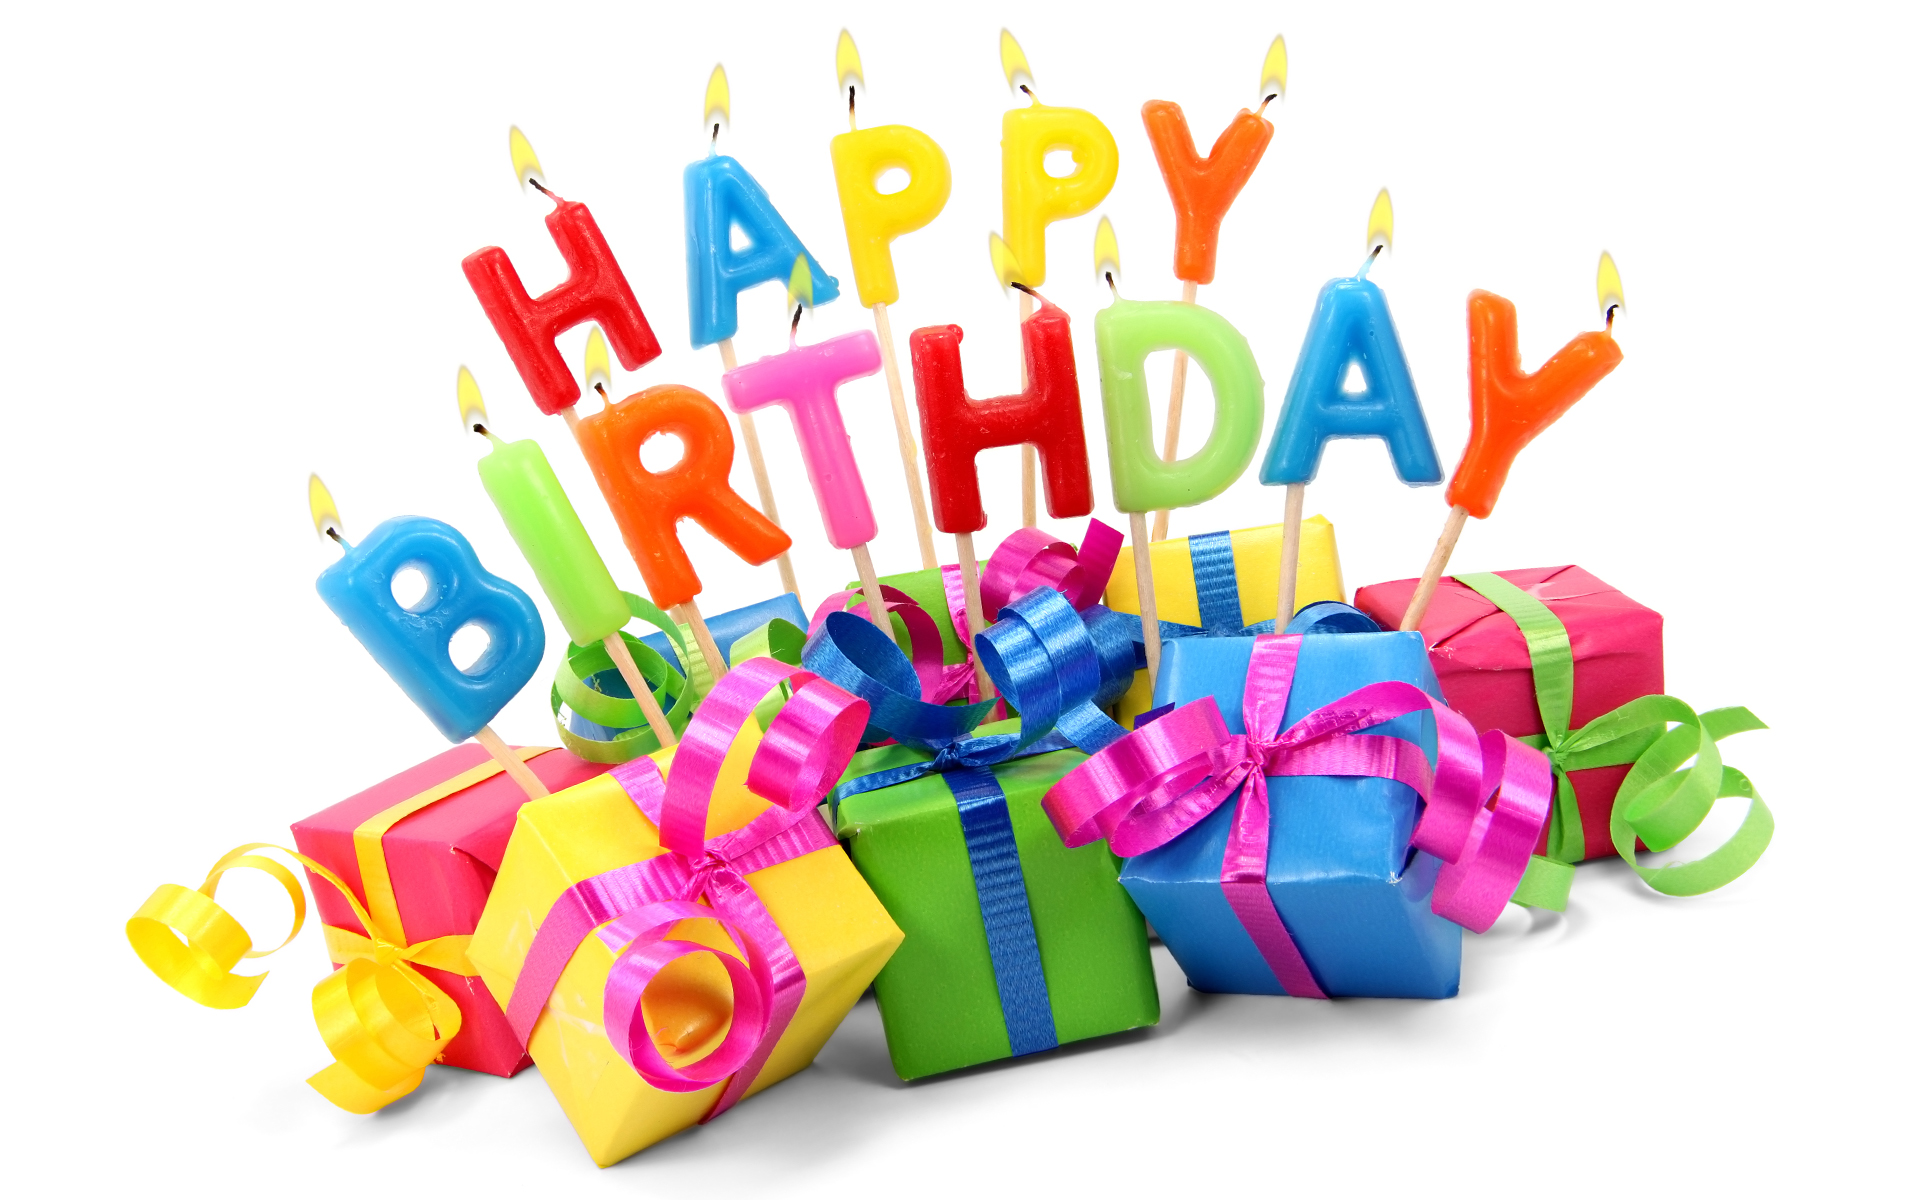 Happy Birthday Scotty2Hotty  Surprise-happy-birthday-gifts-5